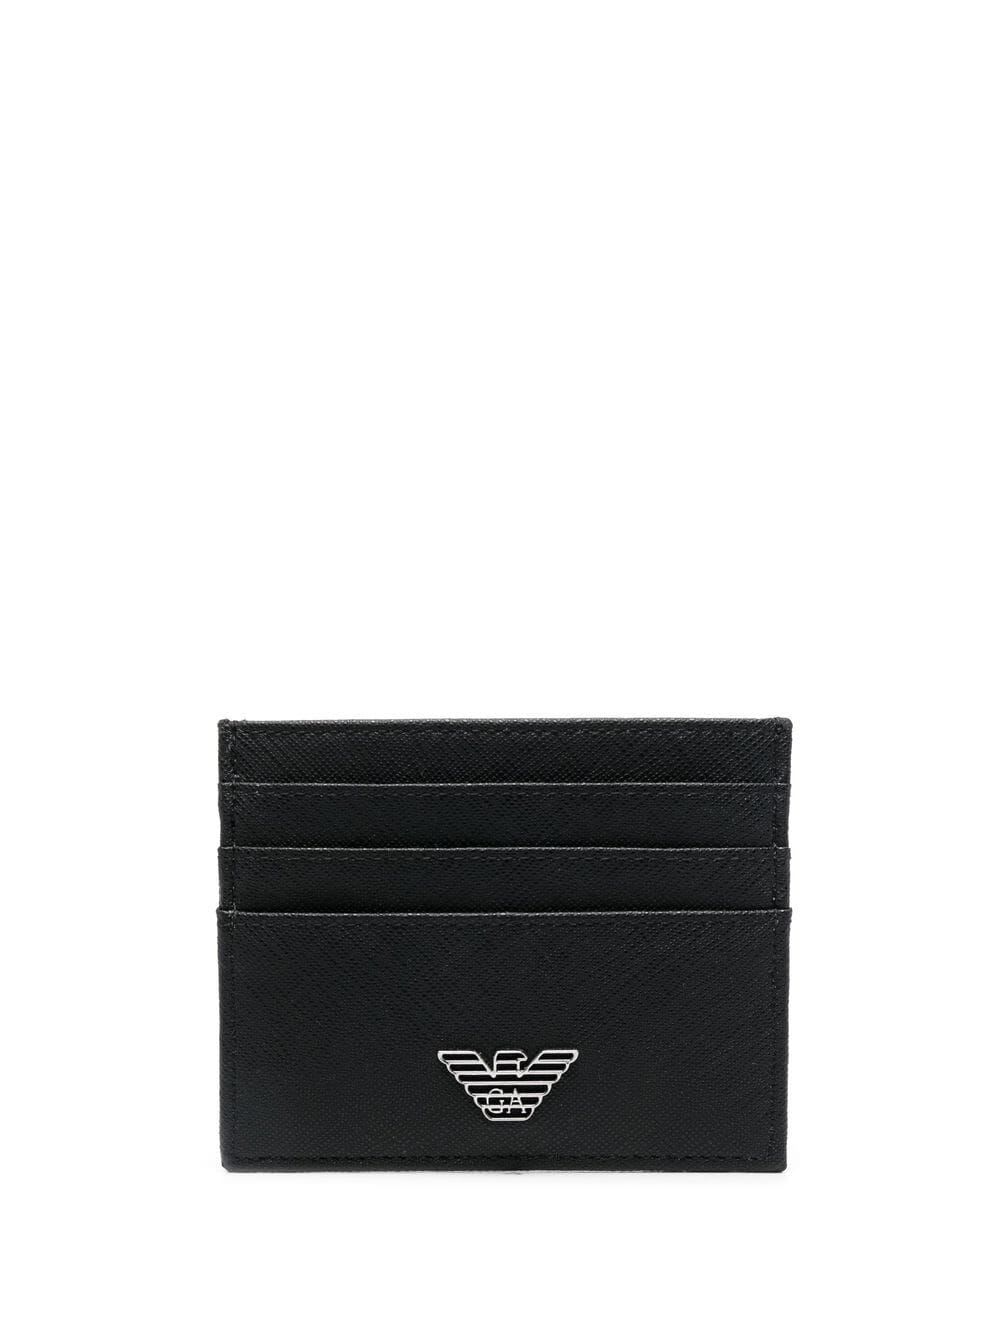 Emporio Armani Credit Card Holder In Black